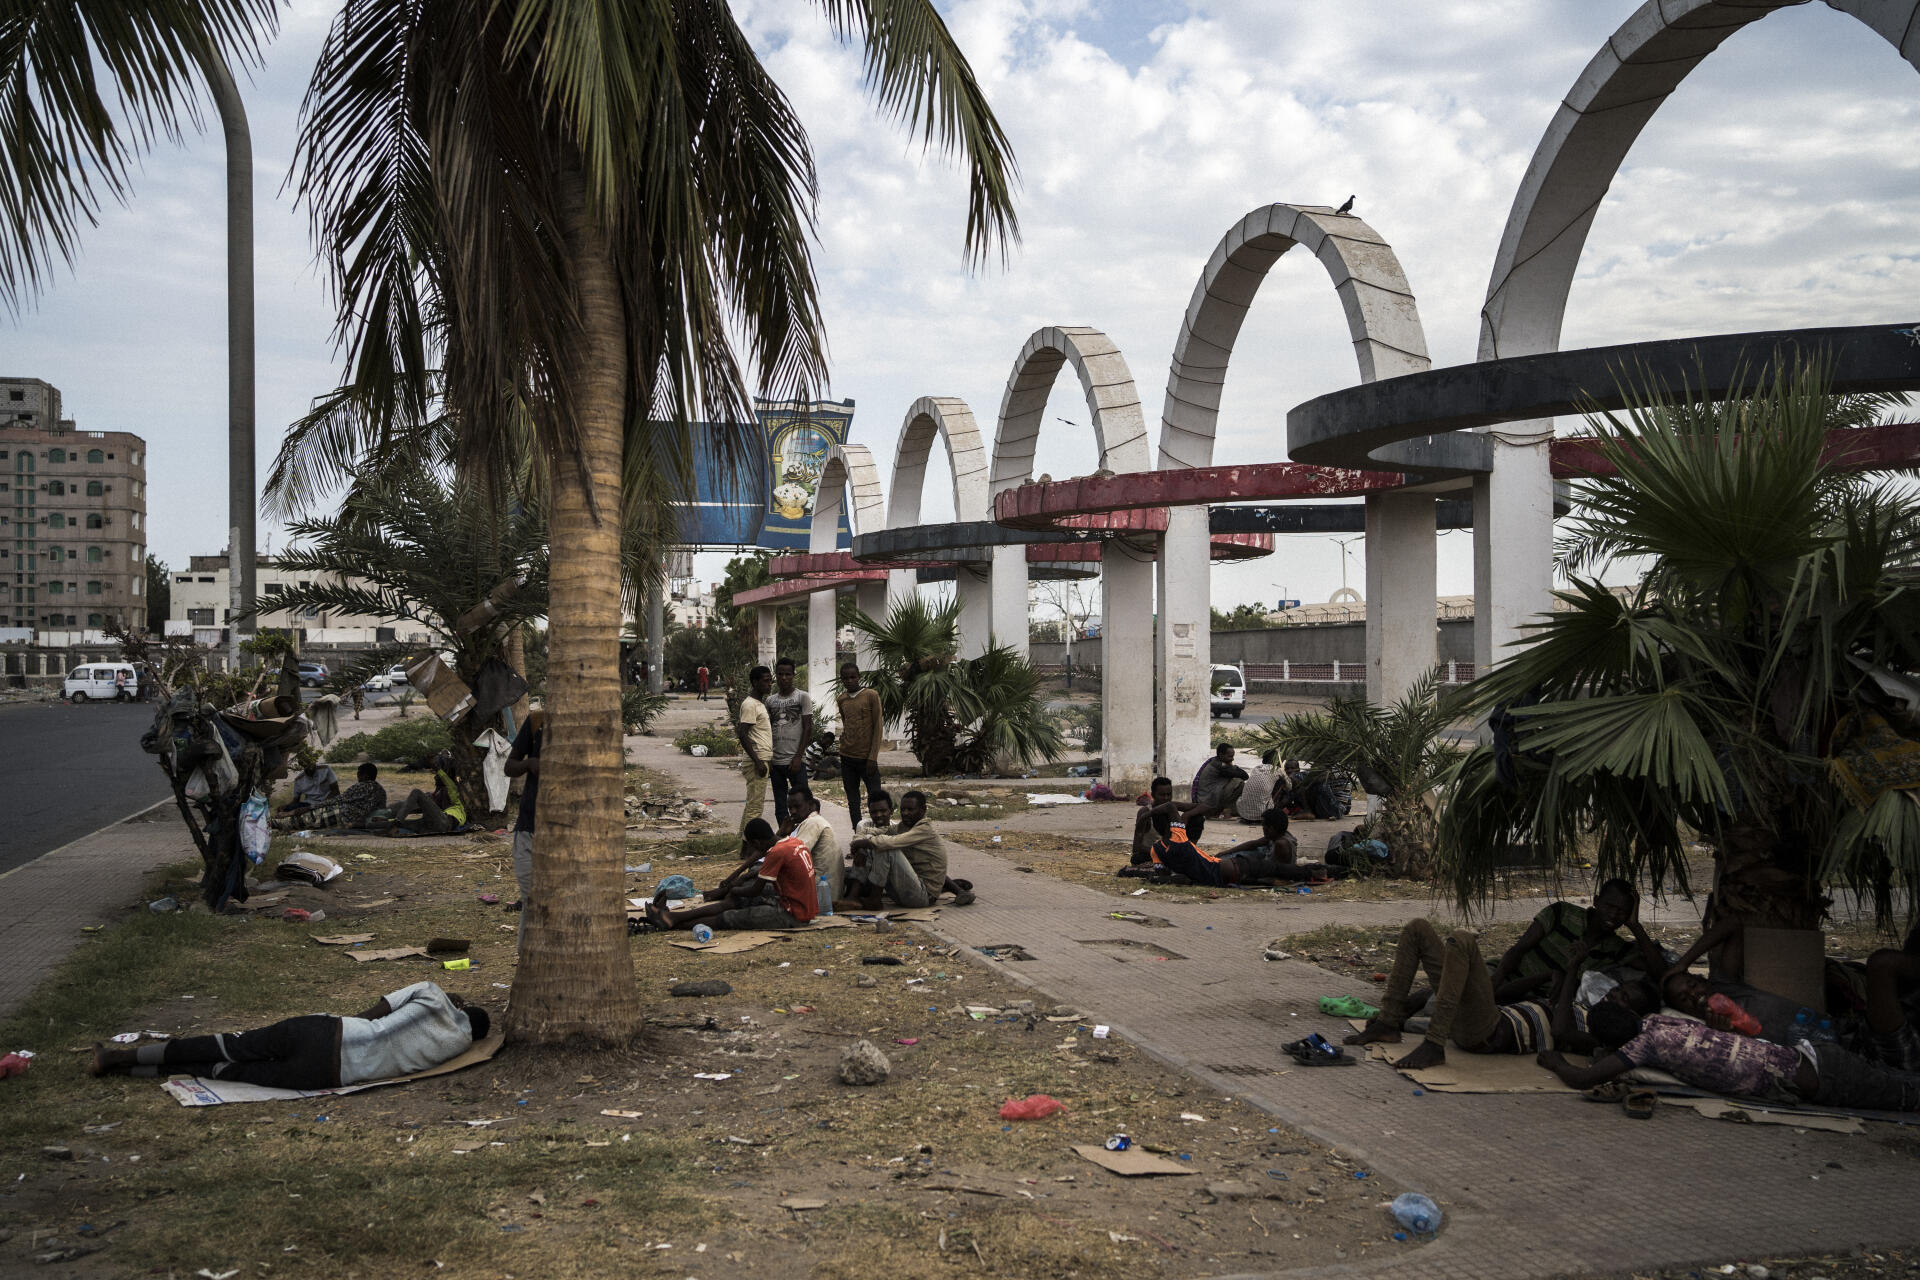 Un groupe de migrants Oromos installé devant un stade désaffecté d’Aden, la capitale du Sud-Yémen. Après avoir parcouru des milliers de kilomètres, ils tentent de travailler on mendient dans l’espoir de continuer leur route vers l’Arabie saoudite.